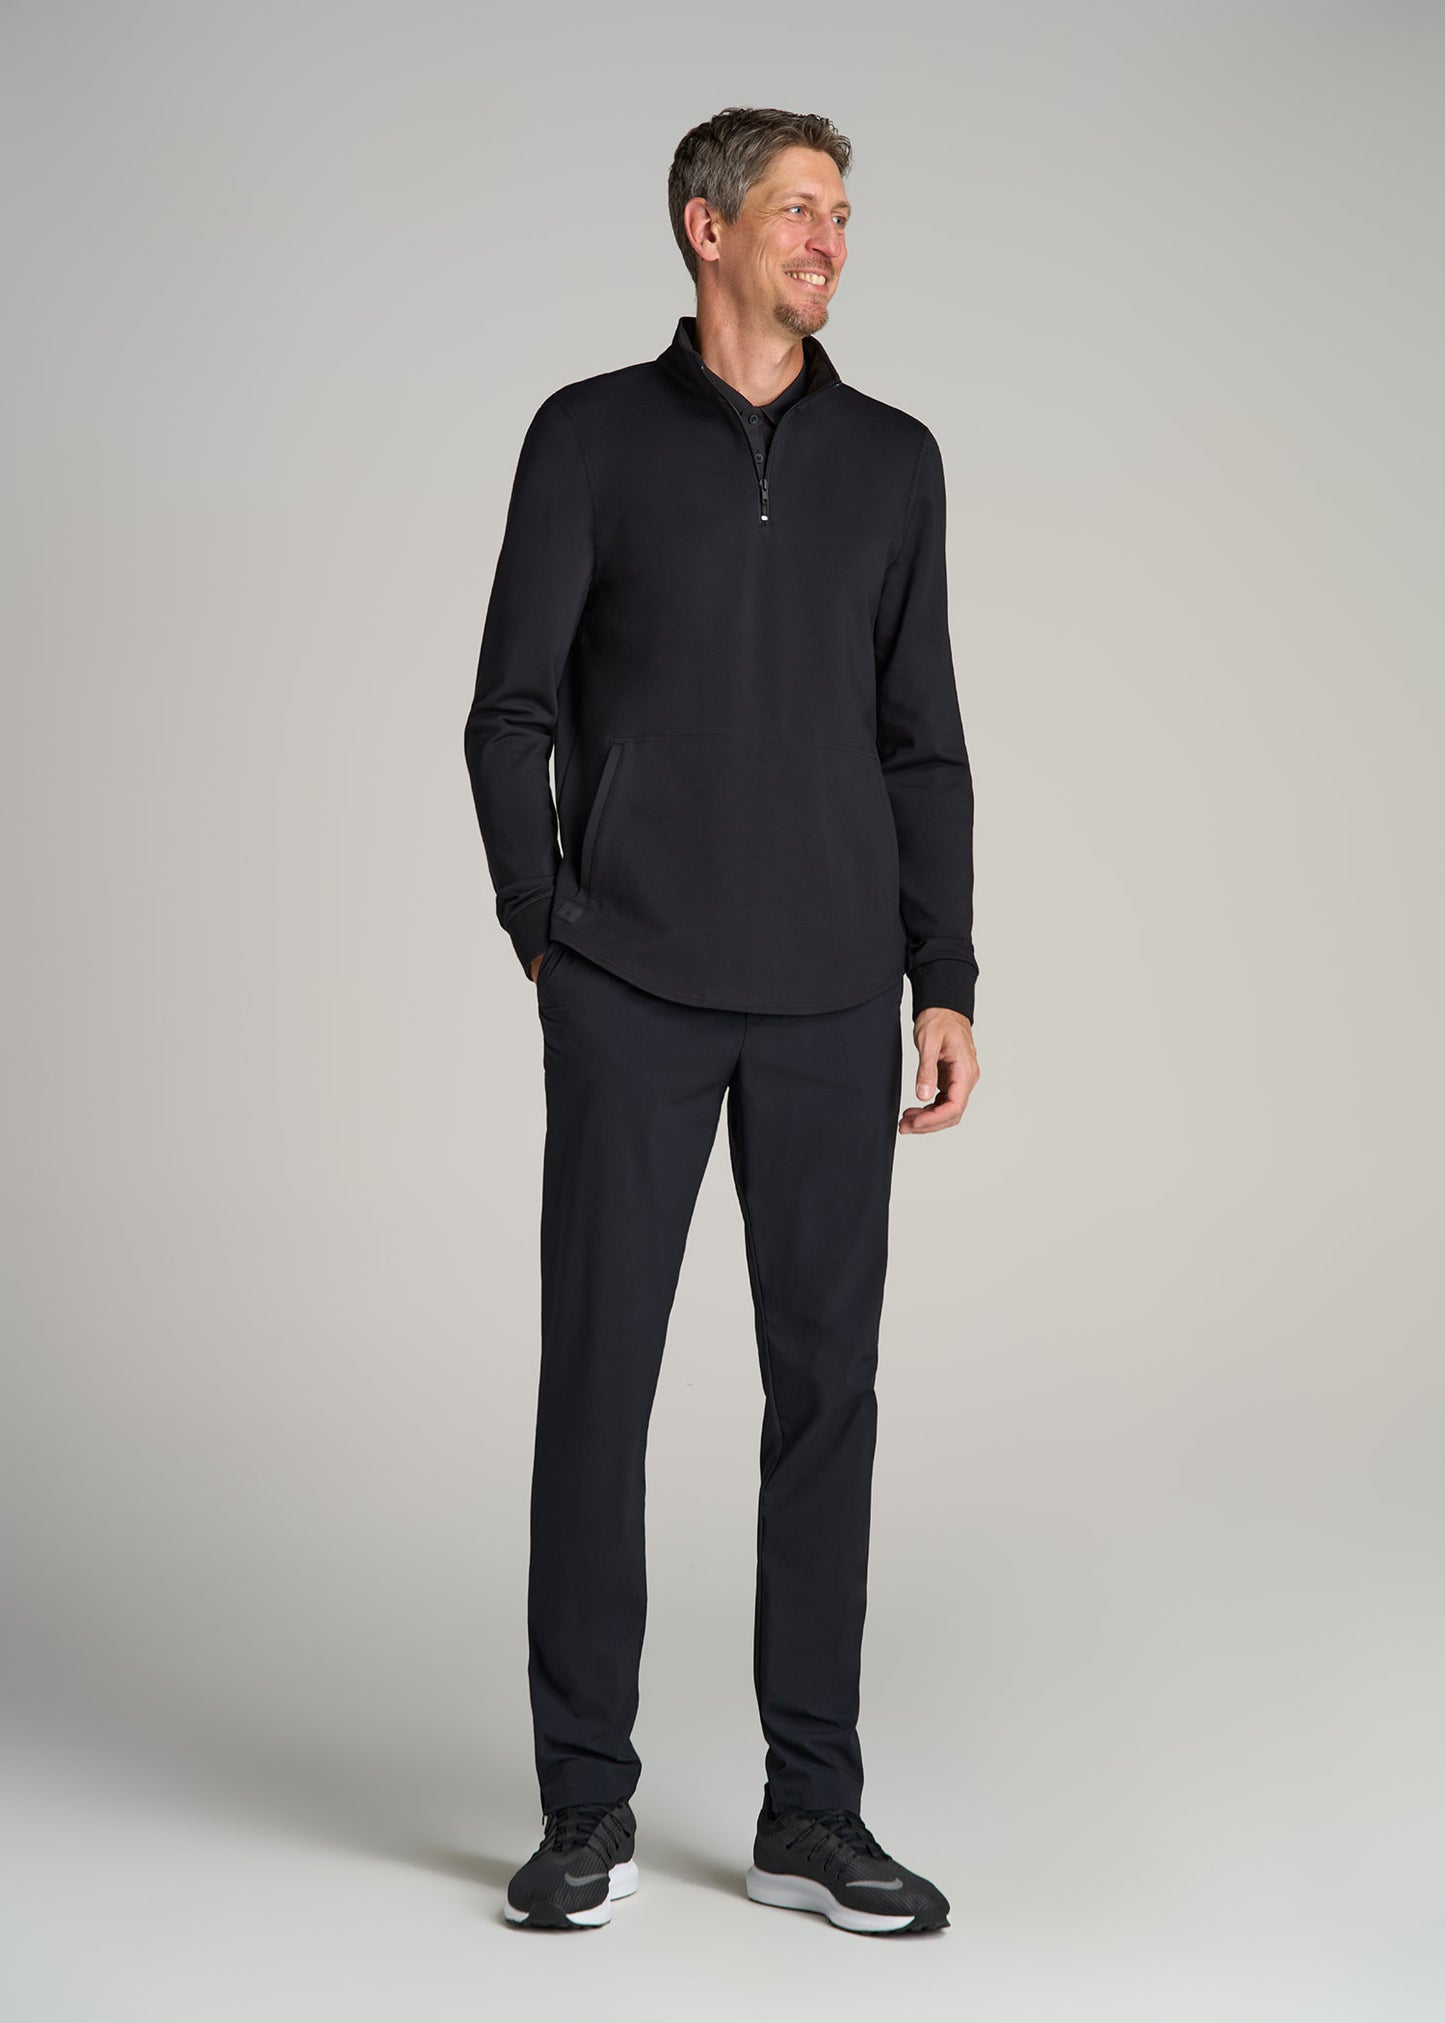 Fairway Popover Tall Men's Sweatshirt in Black